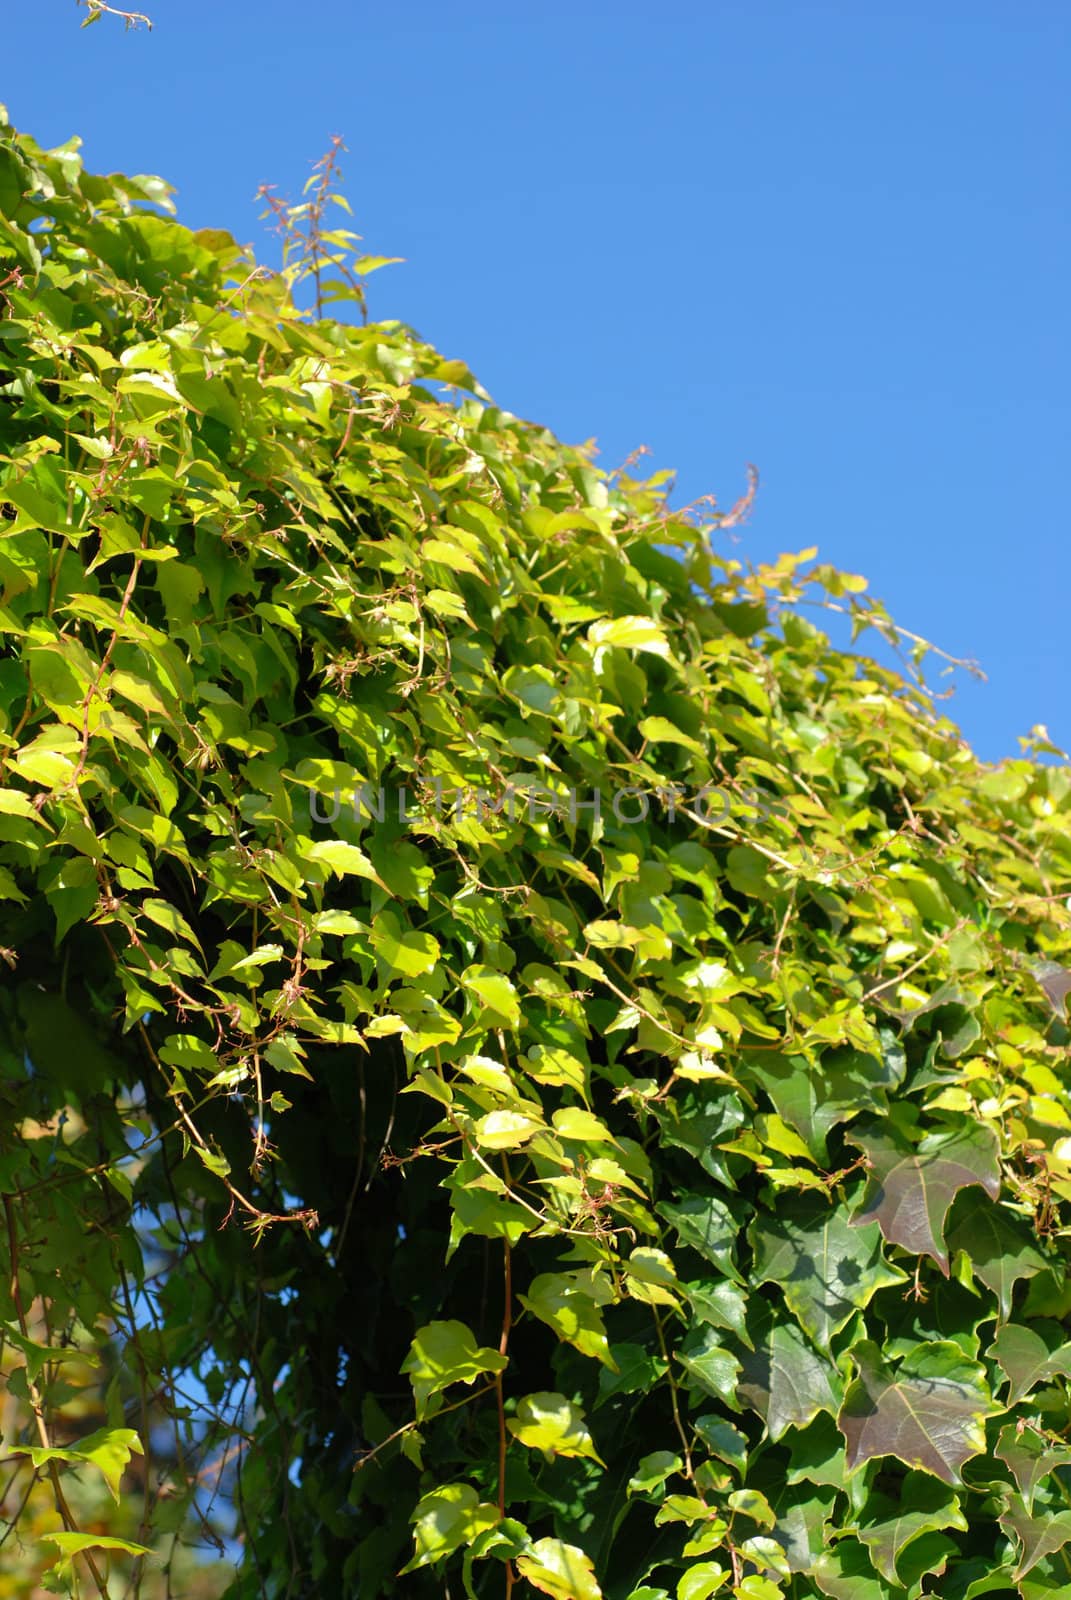 Ivy on the background of blue sky. by wojciechkozlowski